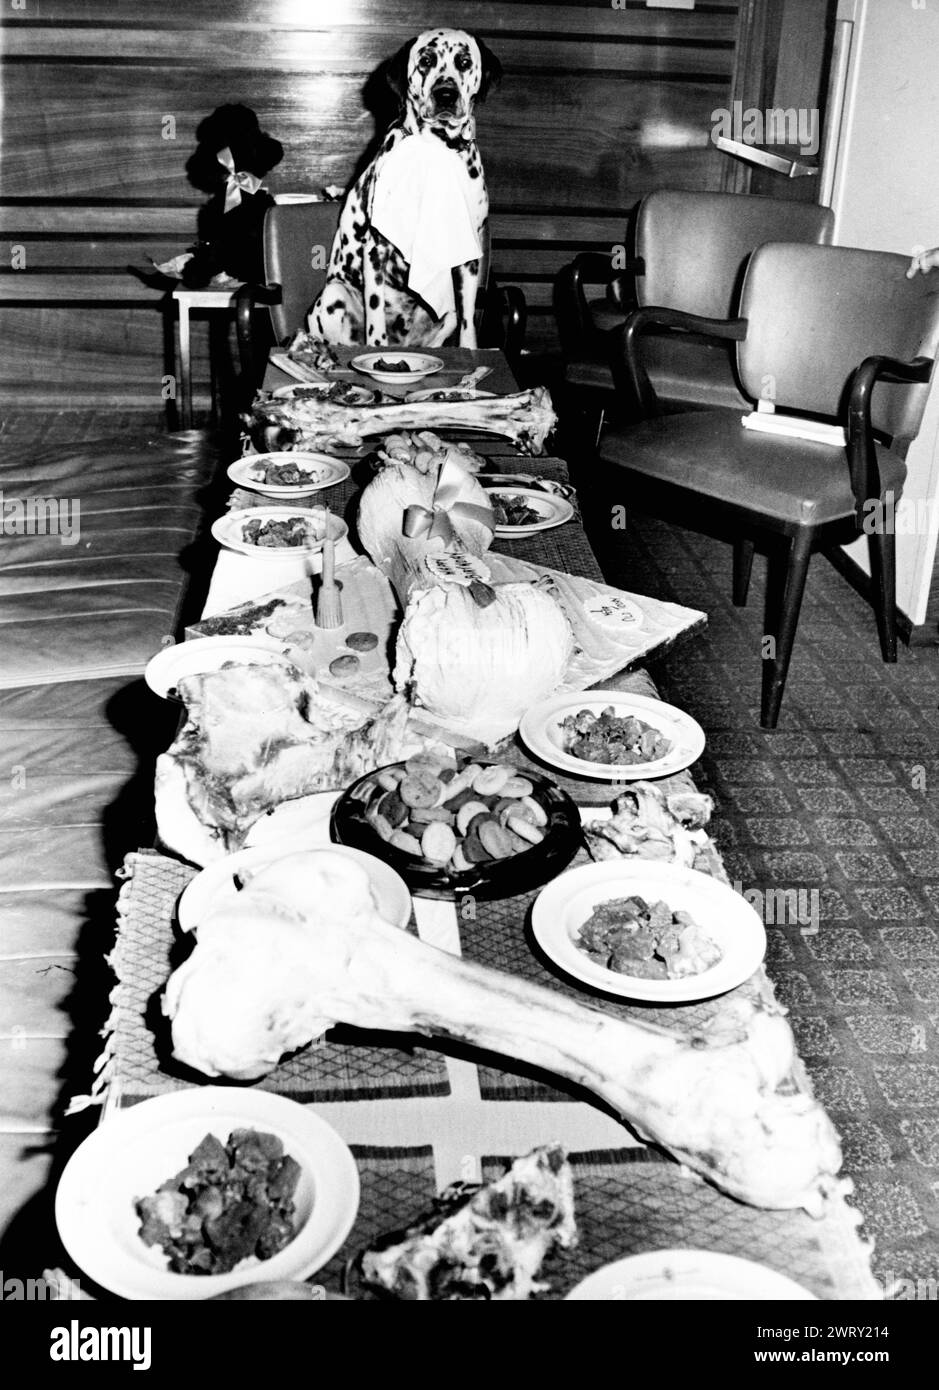 19. August 1963: London, England, Vereinigtes Königreich: A Dogs Dinner. Zu Ehren seines ersten Geburtstags erhielt der dalmatinische SHAWCLOUGH BUCHANEER, bekannt als JASPER, eine feierliche Geburtstagsparty, zu der sein Meister, Kinobesitzer George Batty alle Jaspers Freunde einlud, alle mit ausgezeichneten Pedigrees. Die Gäste, alle 12 von ihnen, wurden durch eine goldene Einladung eingeladen und wurden mit Leber, Keksen, Knochen, 10 Pints Milch und natürlich einem großen Geburtstagskuchen verwöhnt. Es gab keinen gefleckten Hund auf der Speisekarte. (Foto: © Keystone Press Agency/ZUMA Press Wire). NUR REDAKTIONELLE VERWENDUNG! Nicht für kommerzielle ZWECKE! Stockfoto